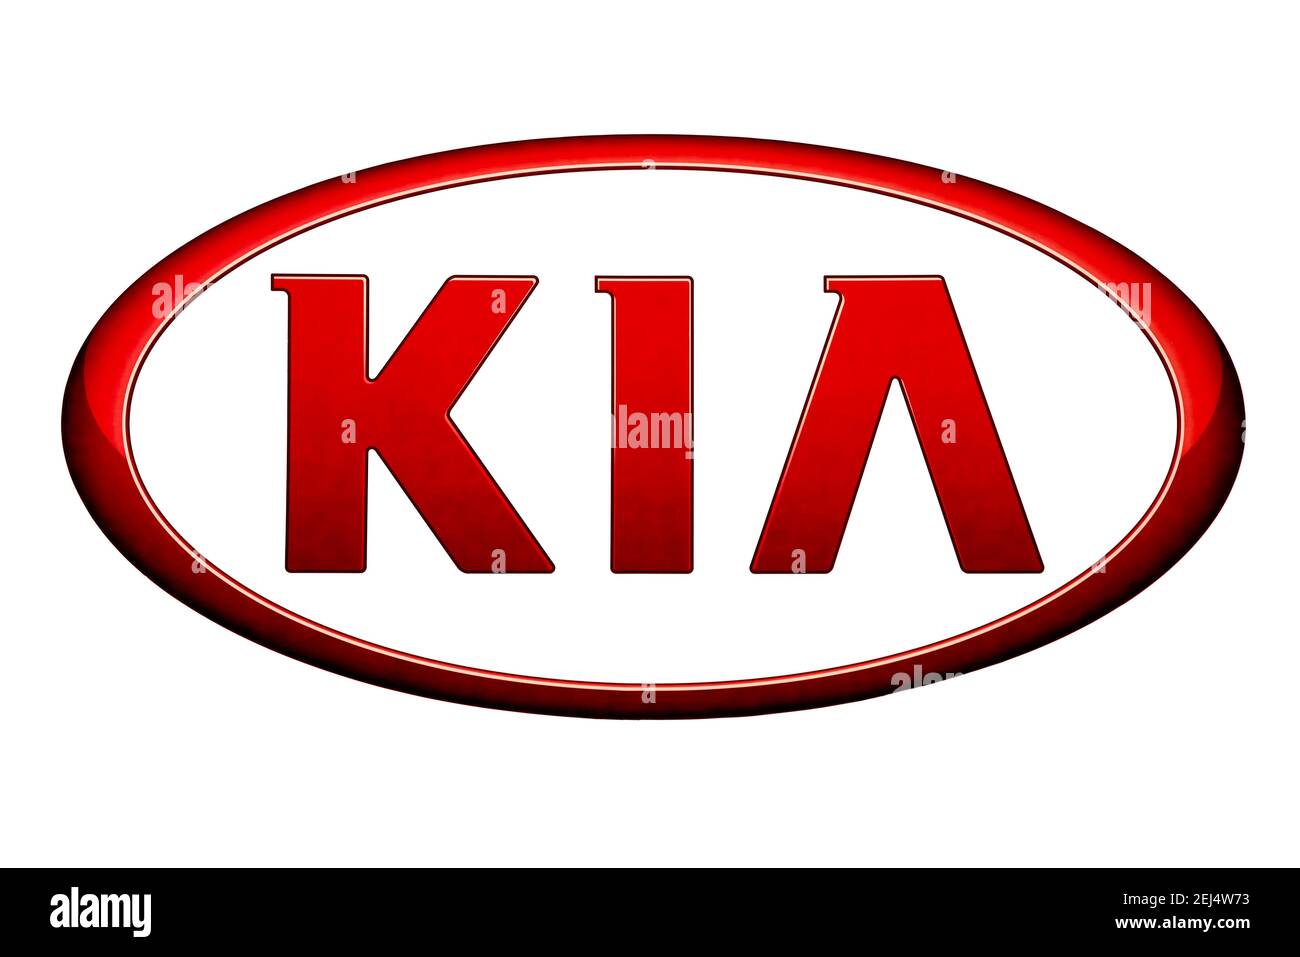 Logo of the car brand Kia, free space on white background Stock Photo